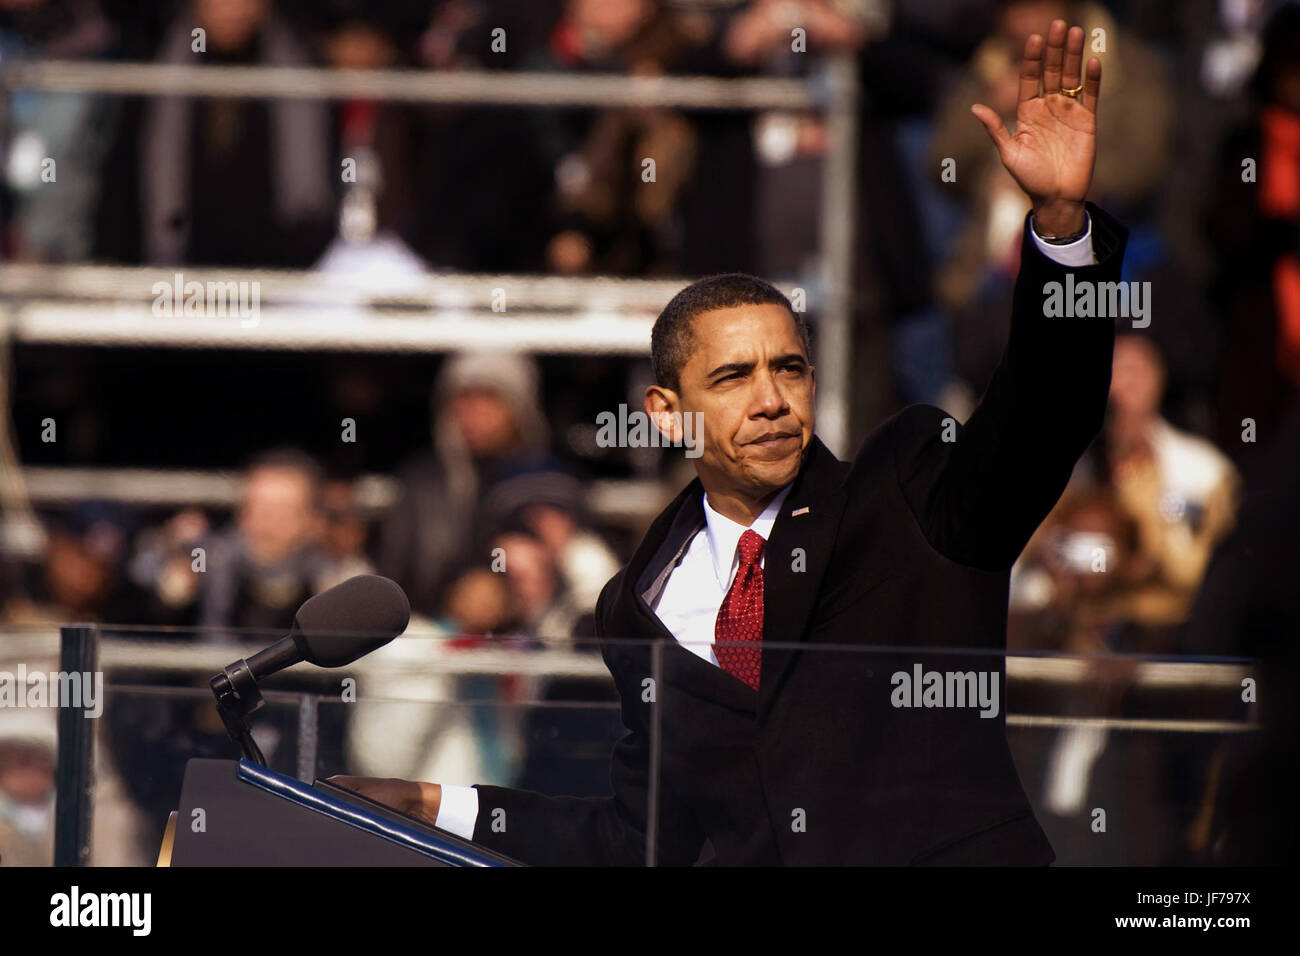 Le 44e président des Etats-Unis barack obama salue la foule à la fin de son discours, Washington, d.c., jan. 20, 2009 Banque D'Images